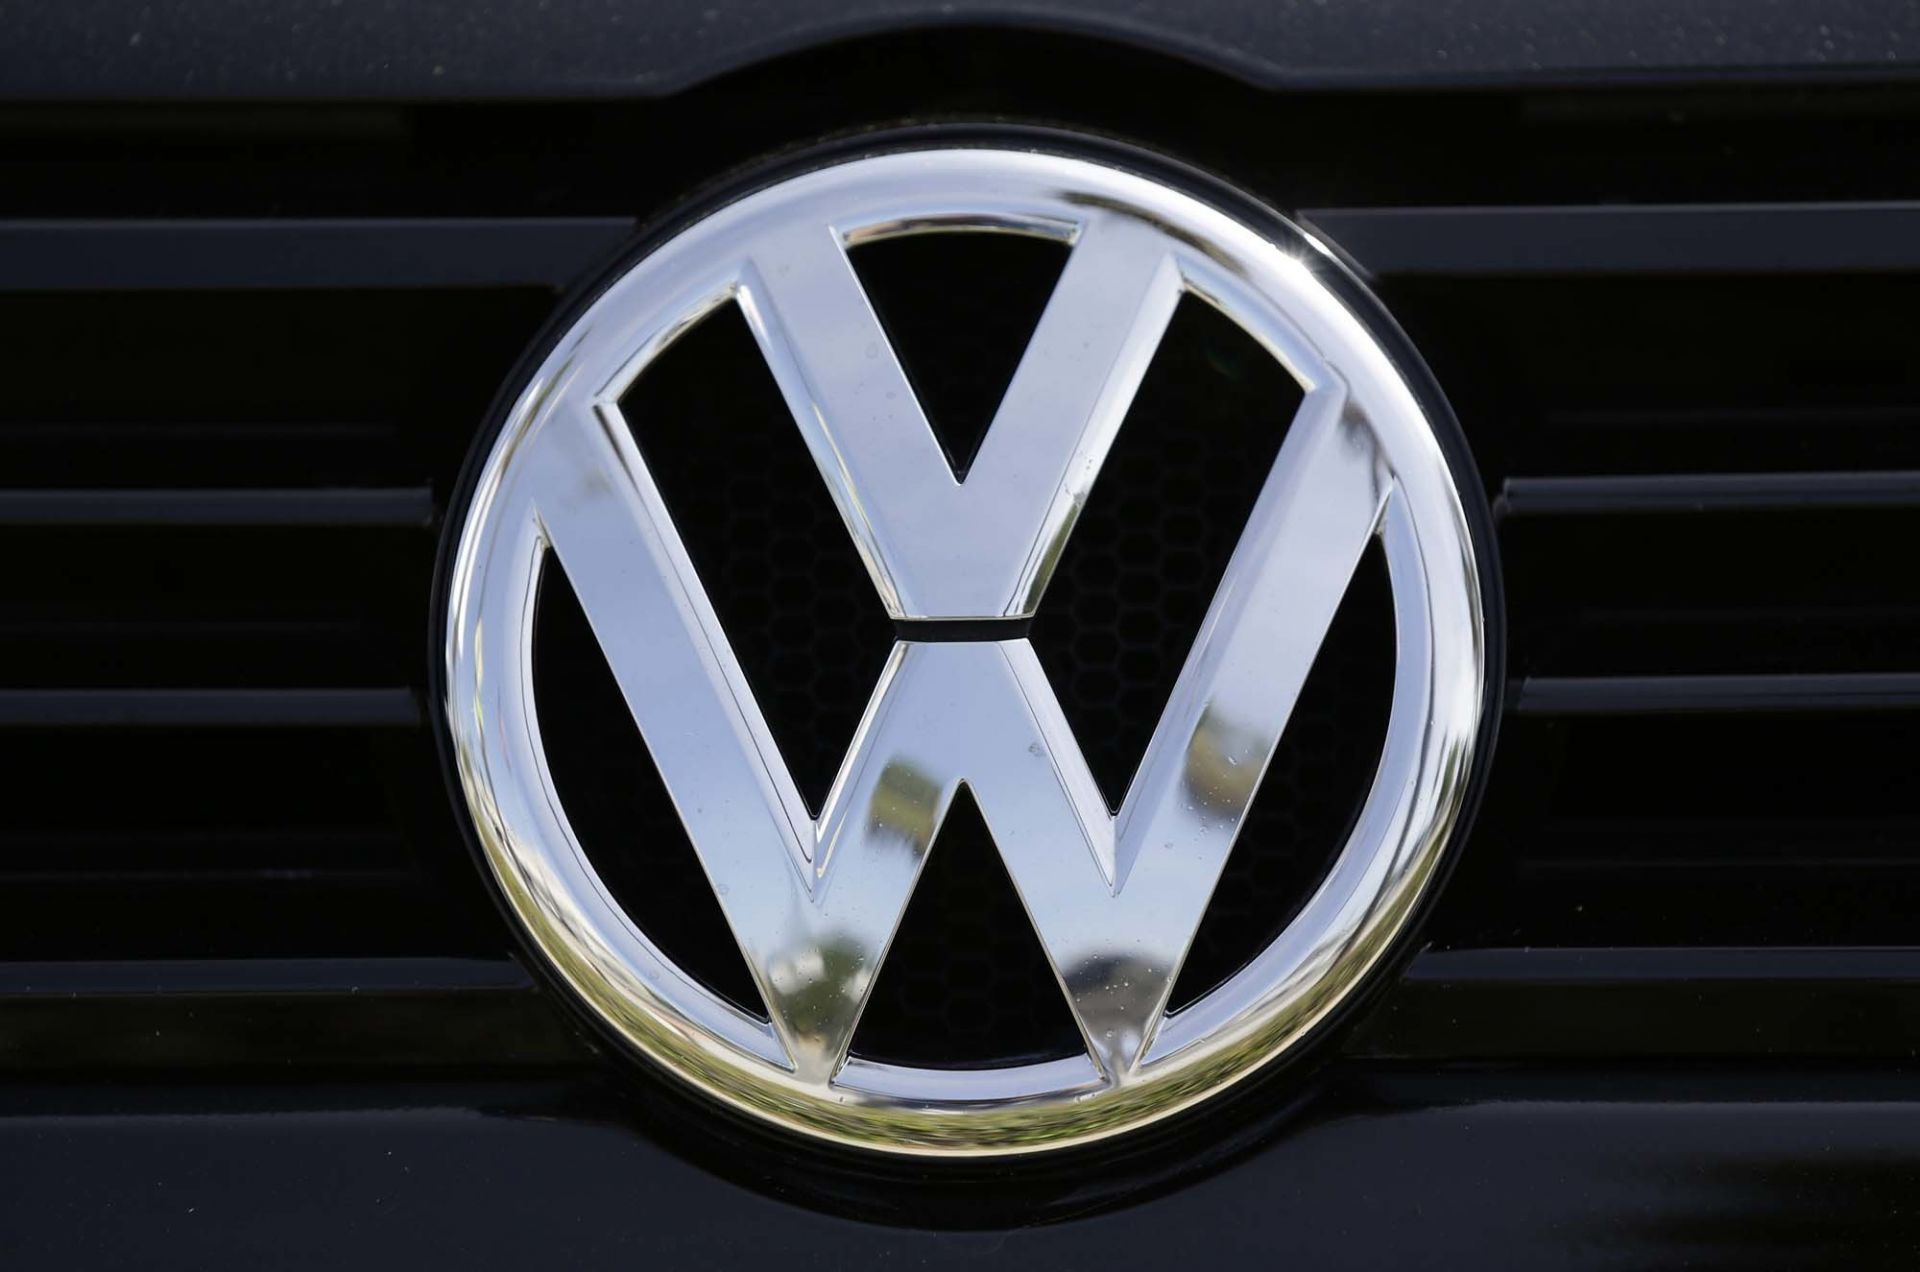 Германският автомобилен производител Volkswagen ще плати на всеки служител годишен бонус като разпределение на печалбата в размер на 4750 евро